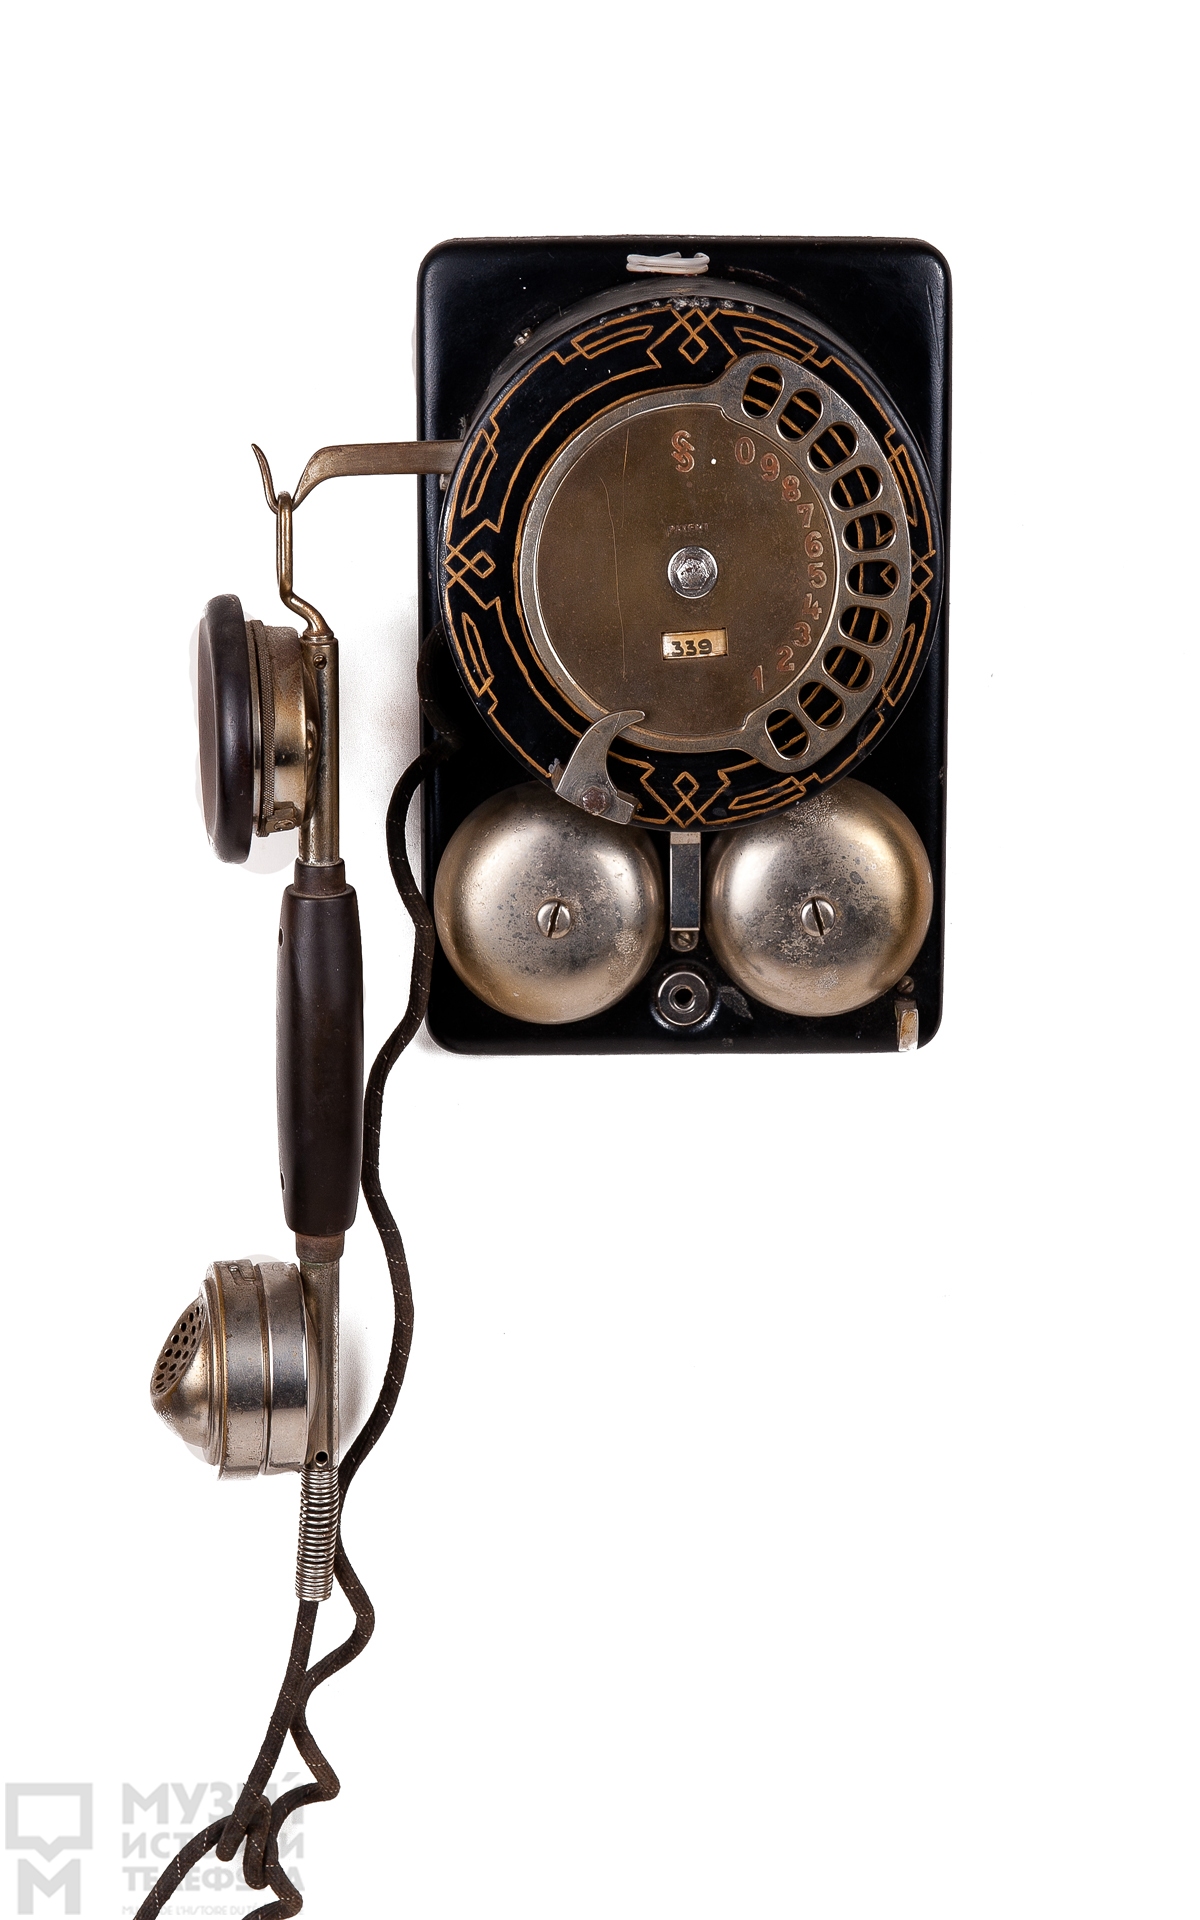 Телефонный аппарат системы АТС с микротелефонной трубкой и поляризованным звонком, диск-номеронабиратель модели "кастет"